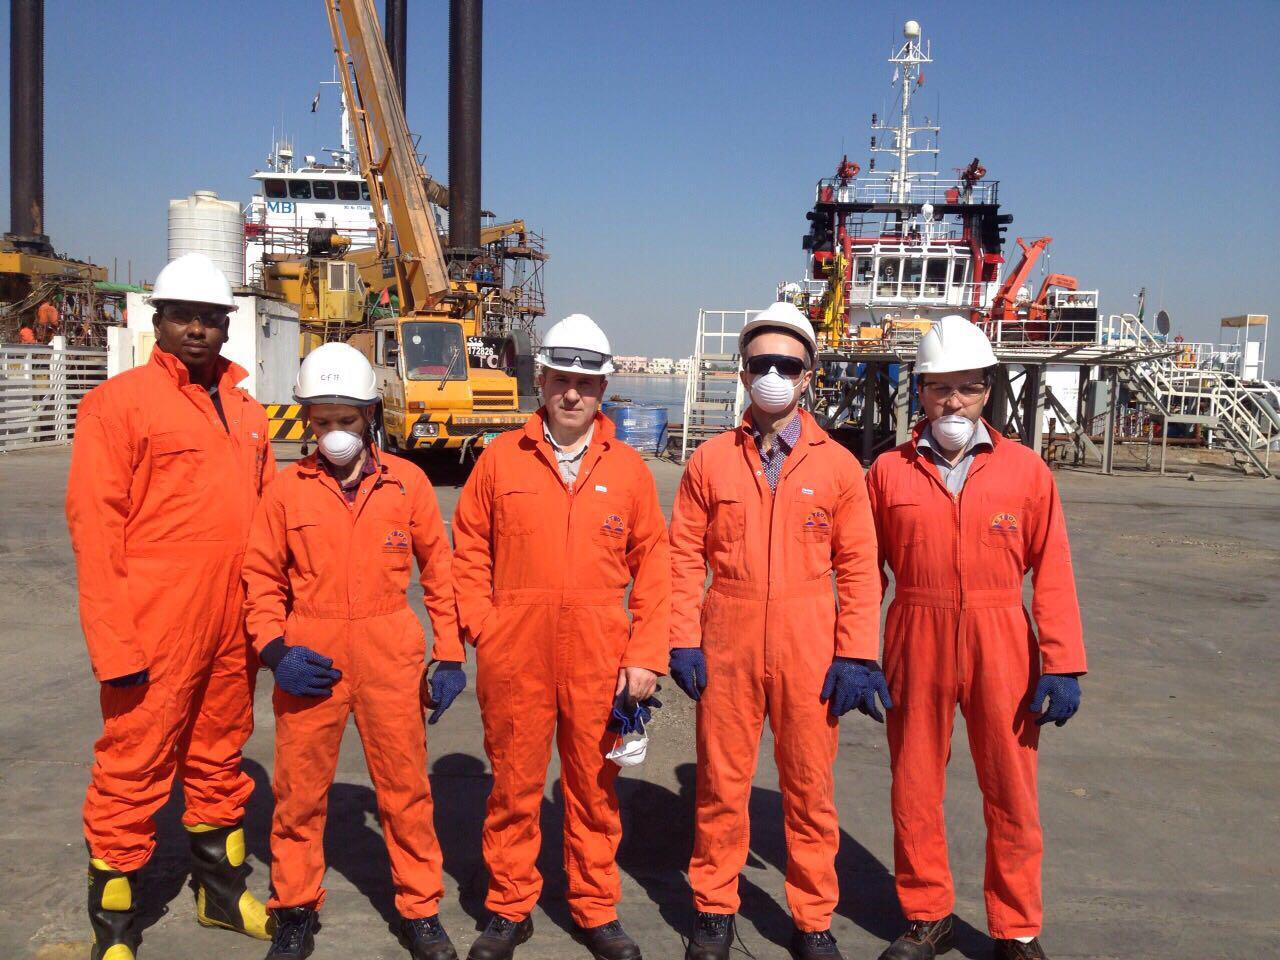 Посещение тренинга по промышленной безопасности и охране труда сотрудниками компании в ОАЭ